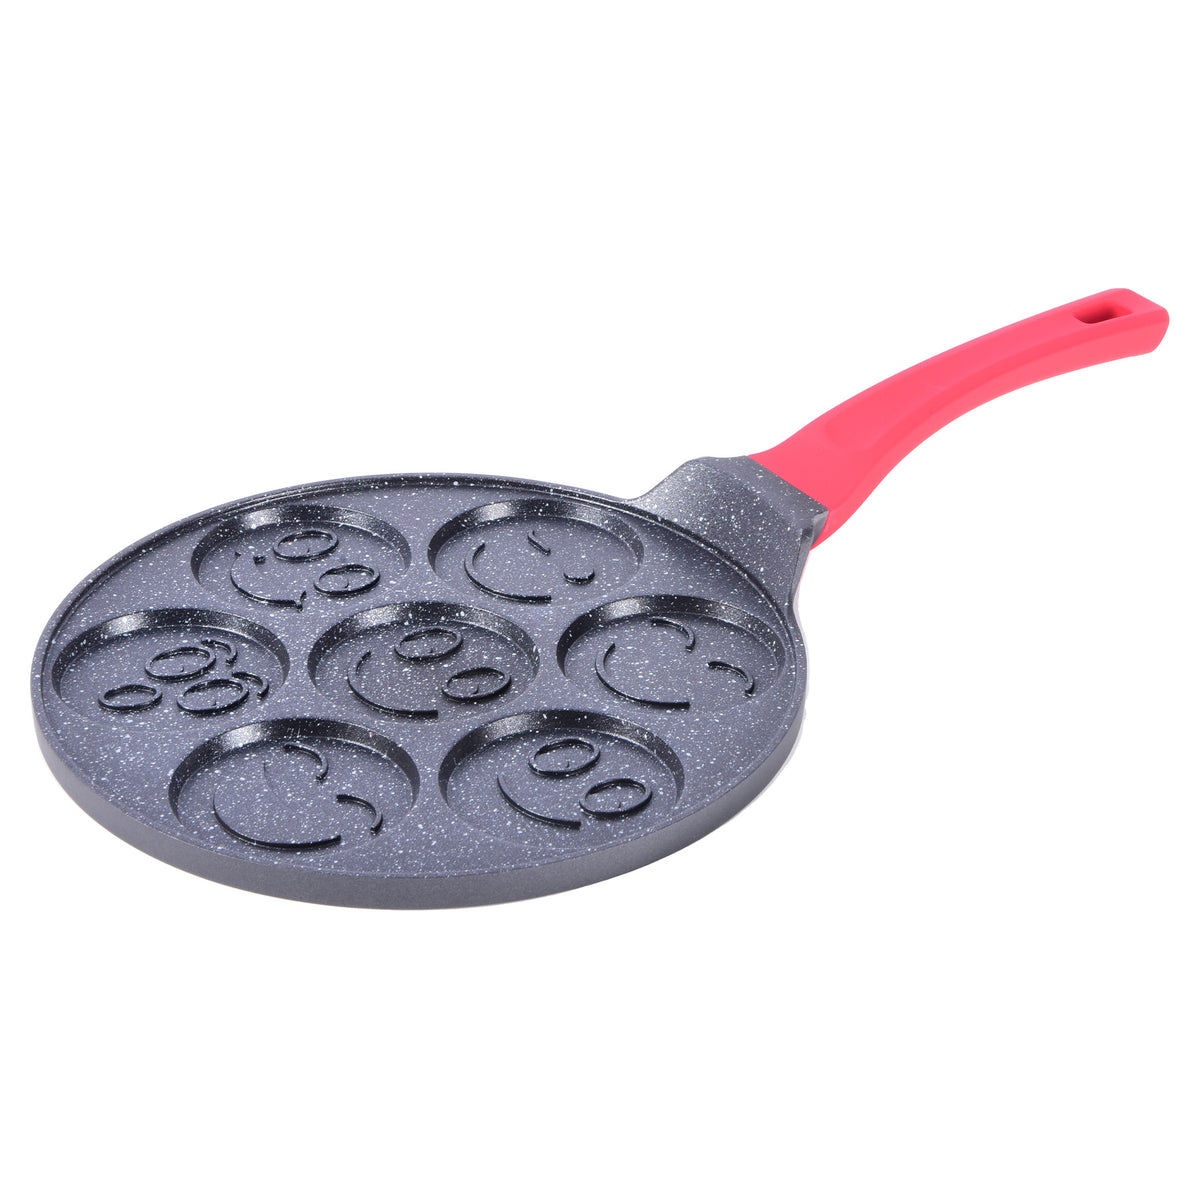 Die-Cast 7 holes emoji pancake pan